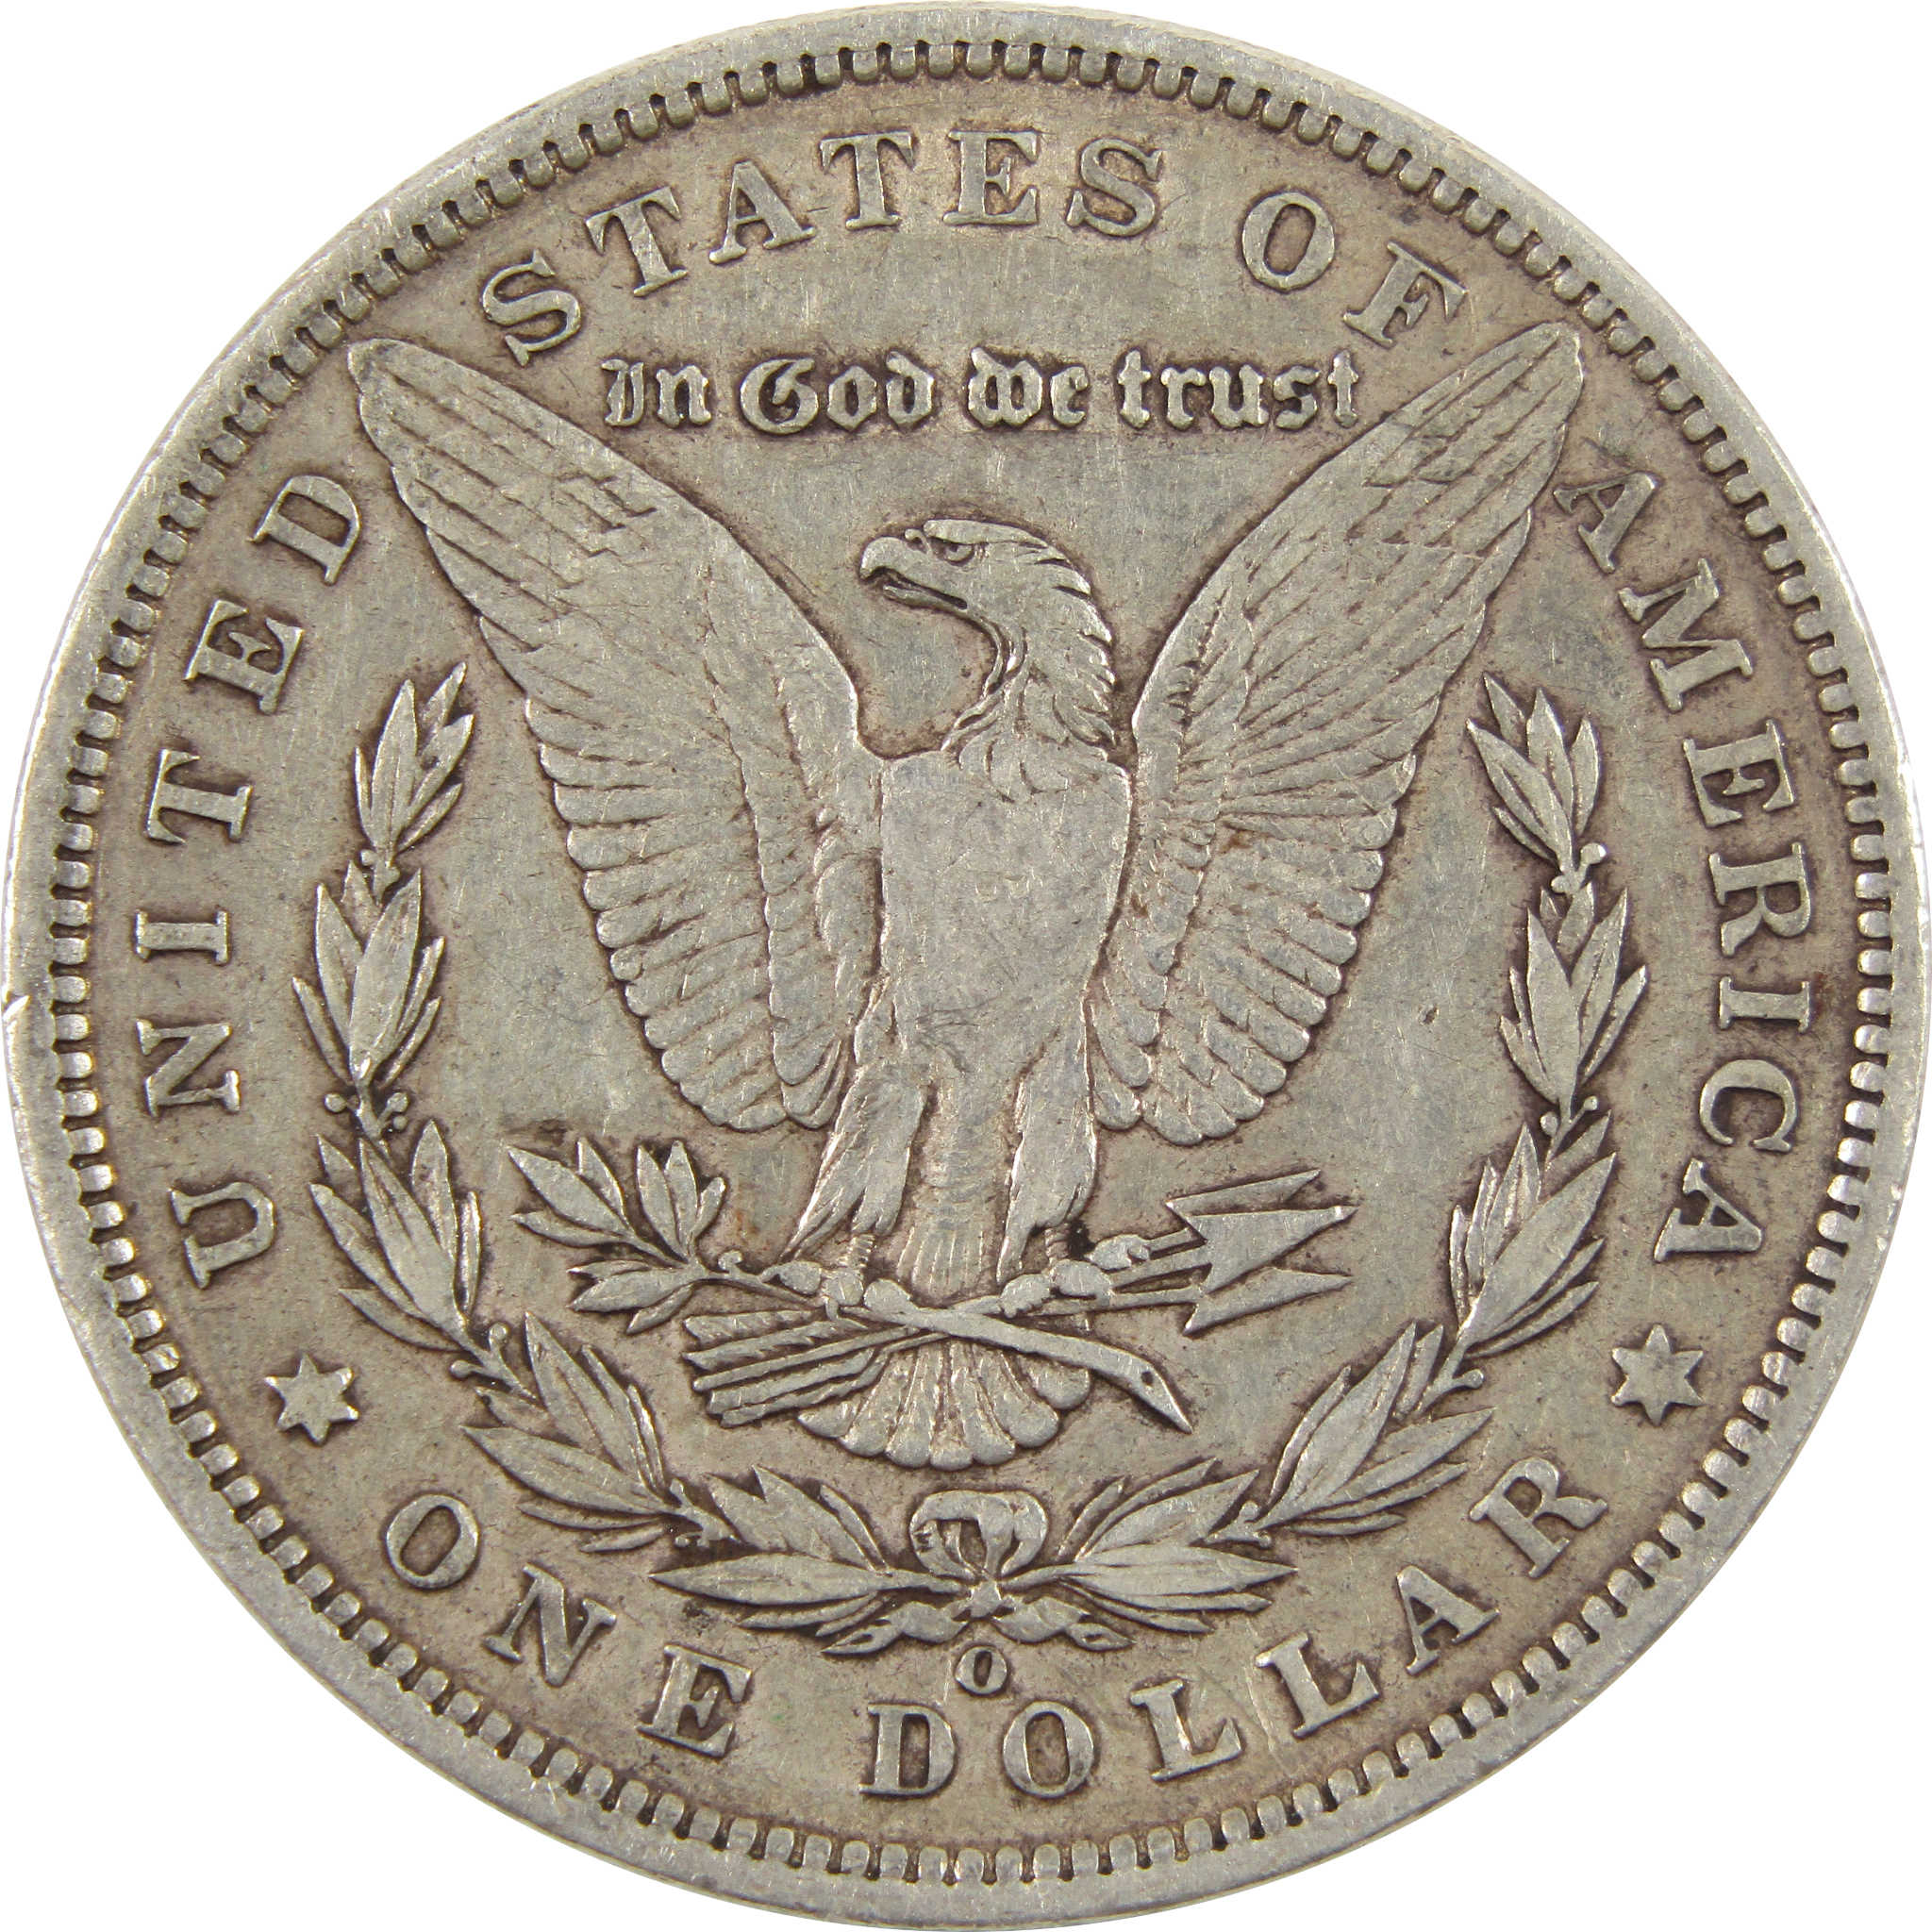 1897 O Morgan Dollar XF EF 90% Silver $1 Coin SKU:I11179 - Morgan coin - Morgan silver dollar - Morgan silver dollar for sale - Profile Coins &amp; Collectibles